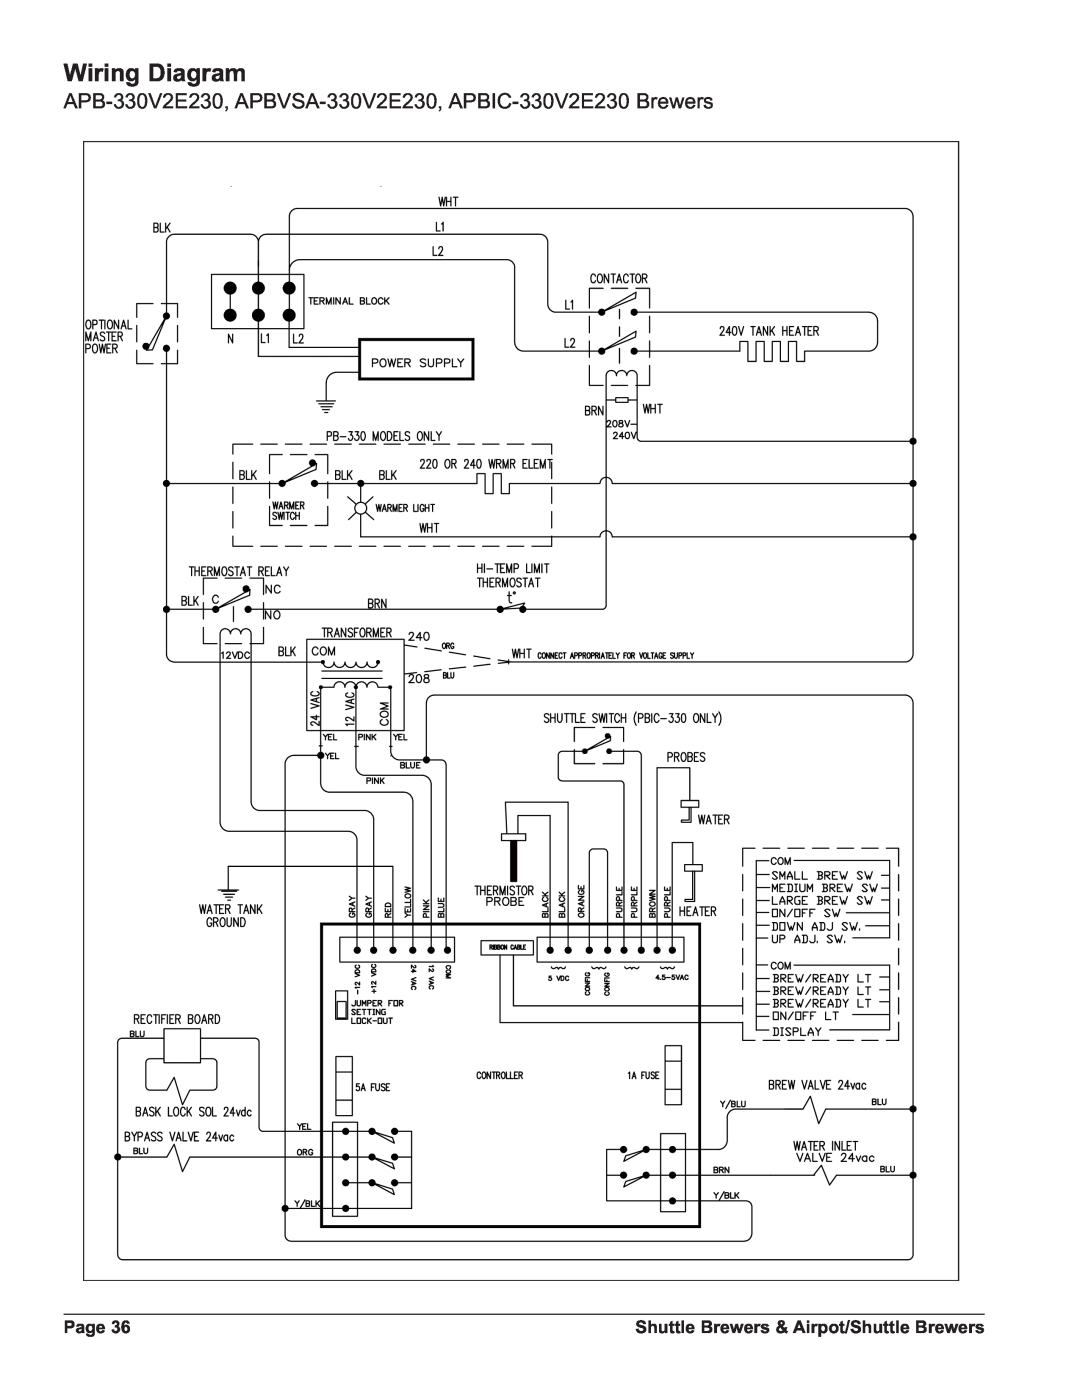 Grindmaster APBIC-430V2, PBIC-430V2E230 APB-330V2E230, APBVSA-330V2E230, APBIC-330V2E230 Brewers, Wiring Diagram, Page 